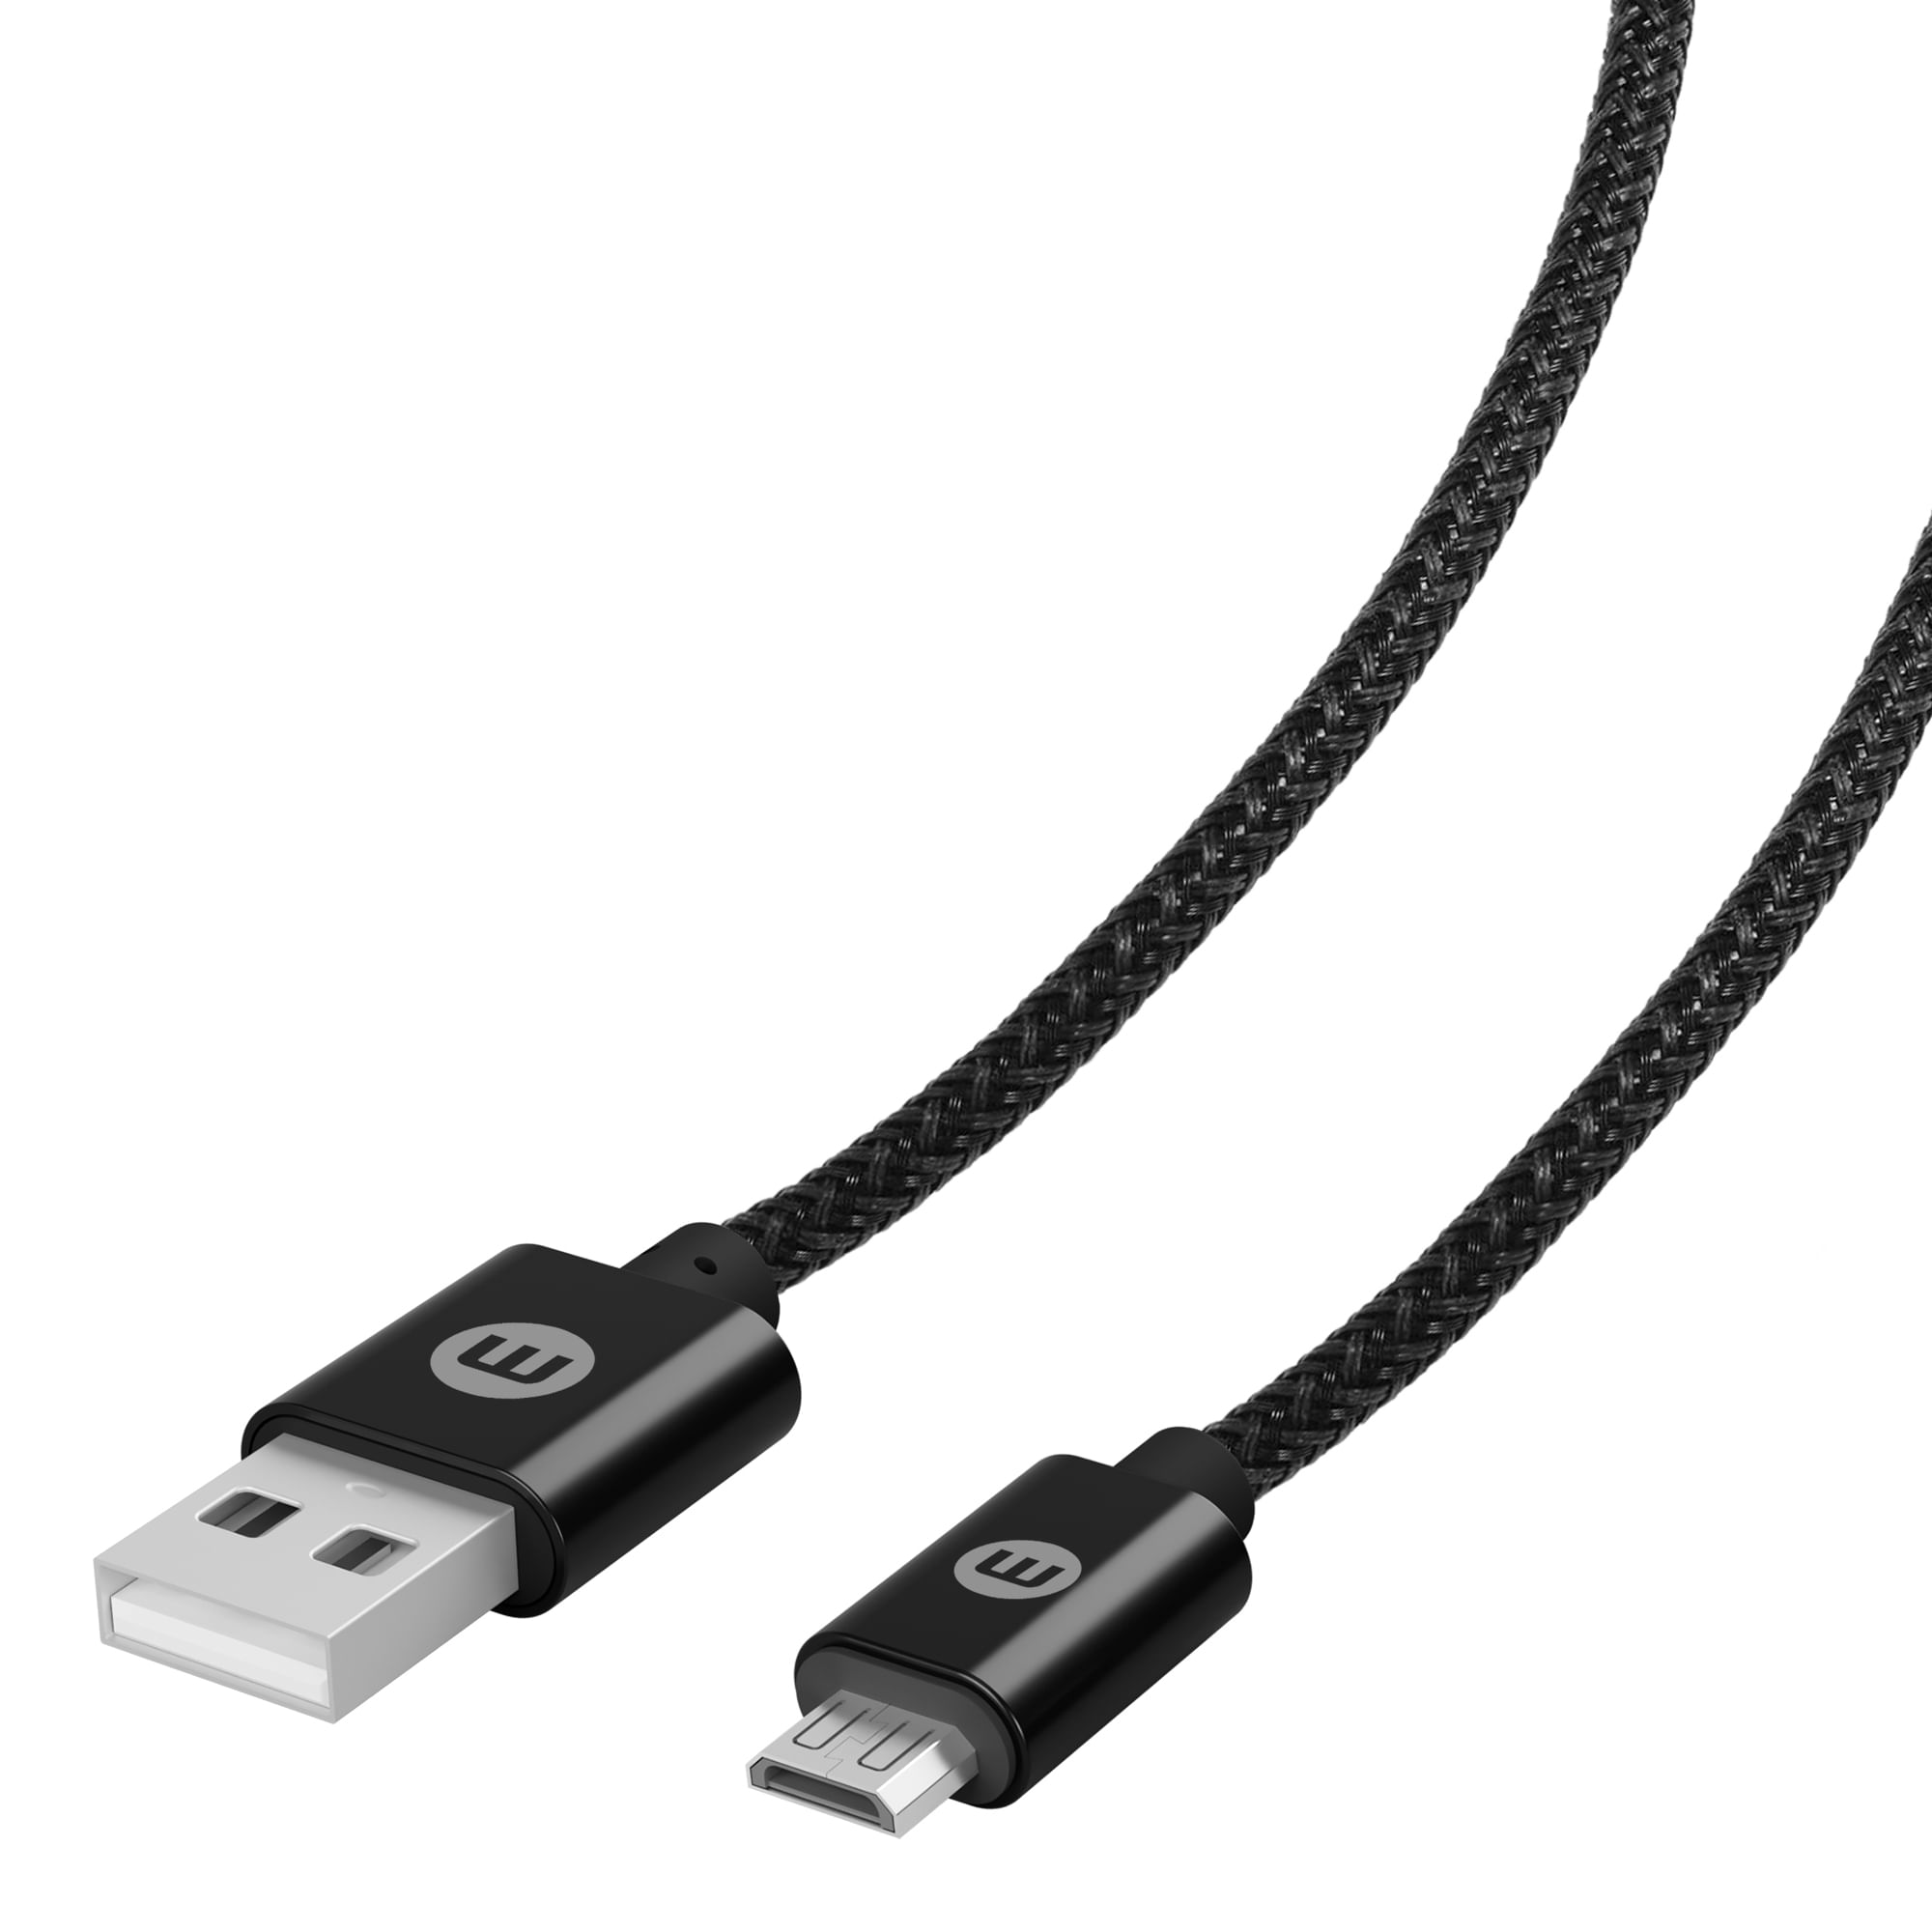 Cable USB- Micro USB Carga Estándar 2 m- negro